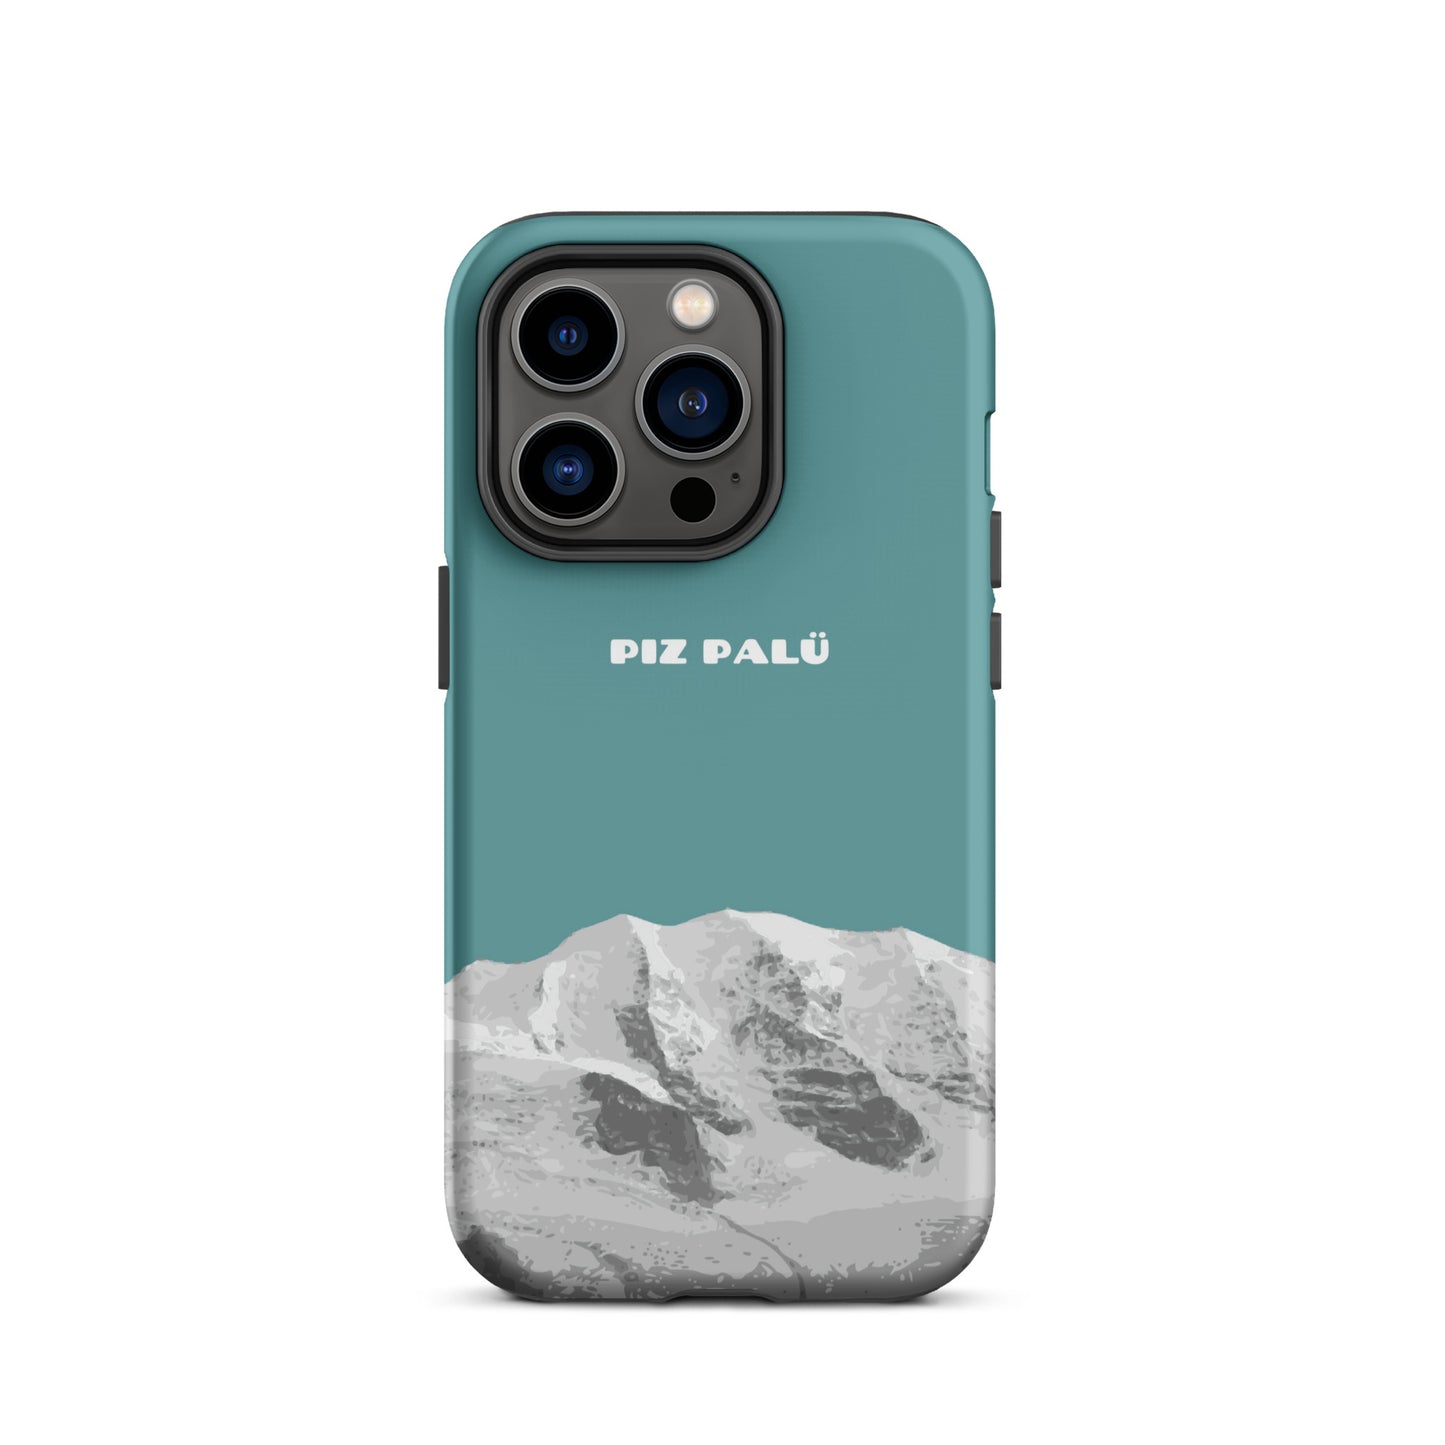 Hülle für das iPhone 14 Pro von Apple in der Farbe Kadettenblau, dass den Piz Palü in Graubünden zeigt.